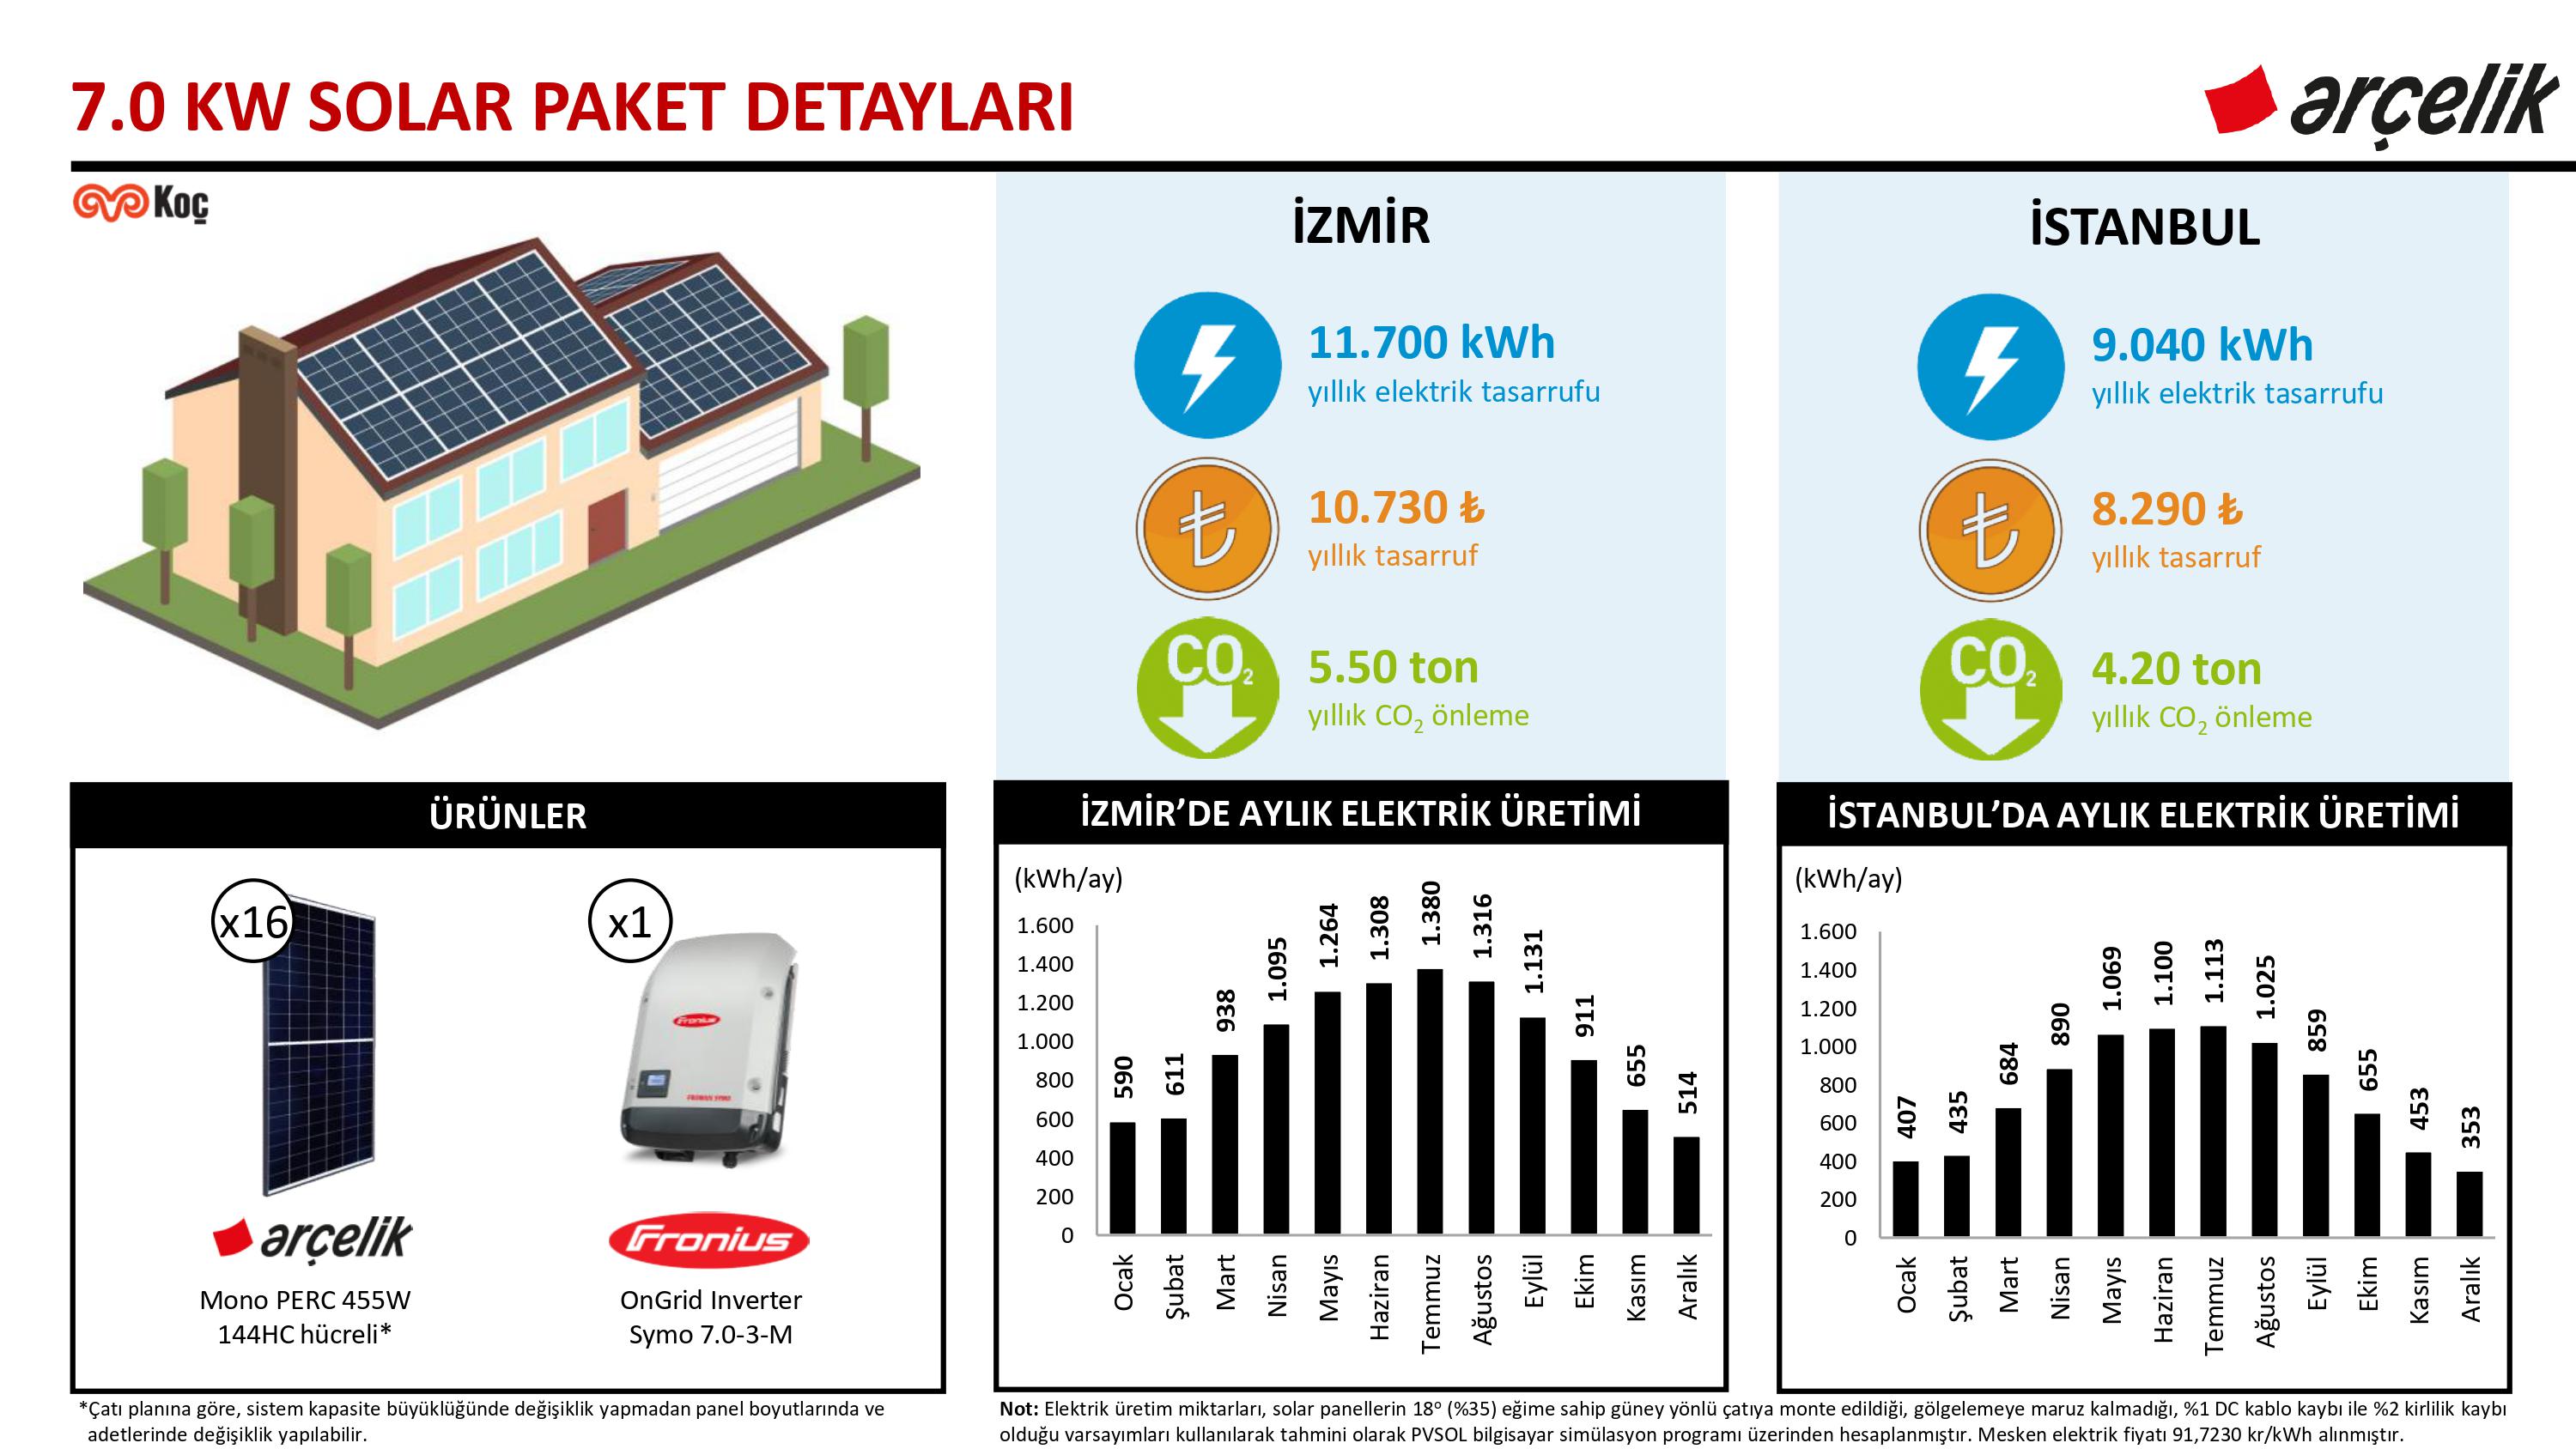 Arçelik 7.0 kW Solar Paket ve Yapı Kredi Leasing Detayları